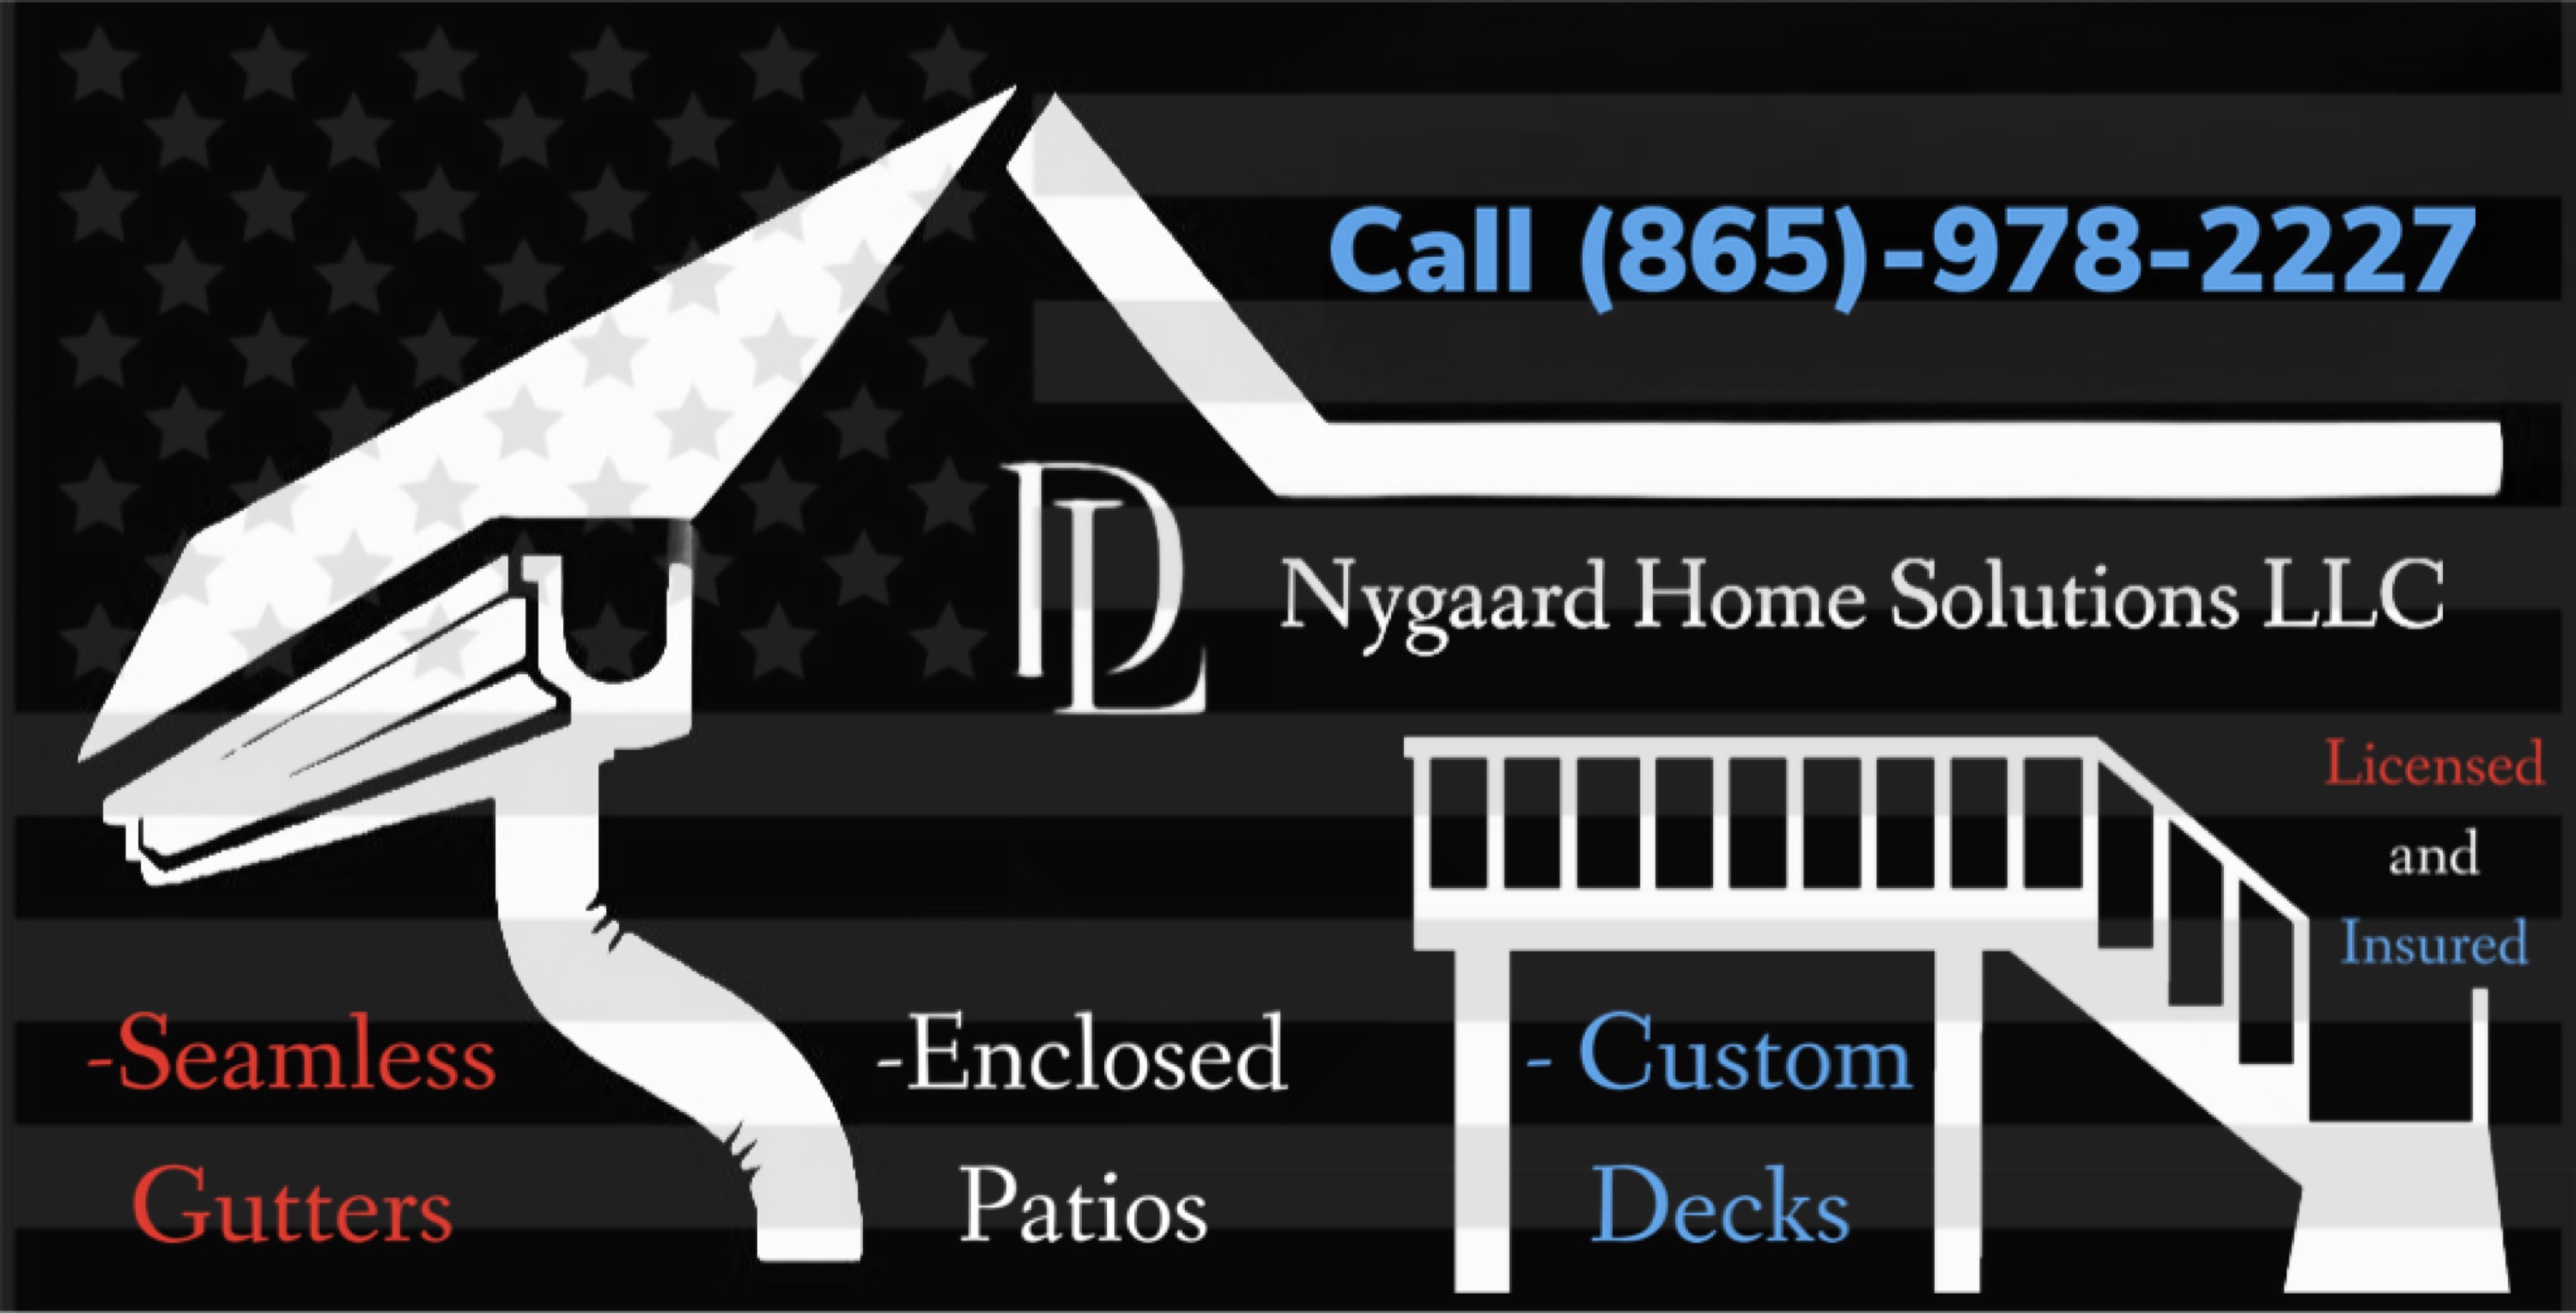 D L NYGAARD Homes Solutions Logo